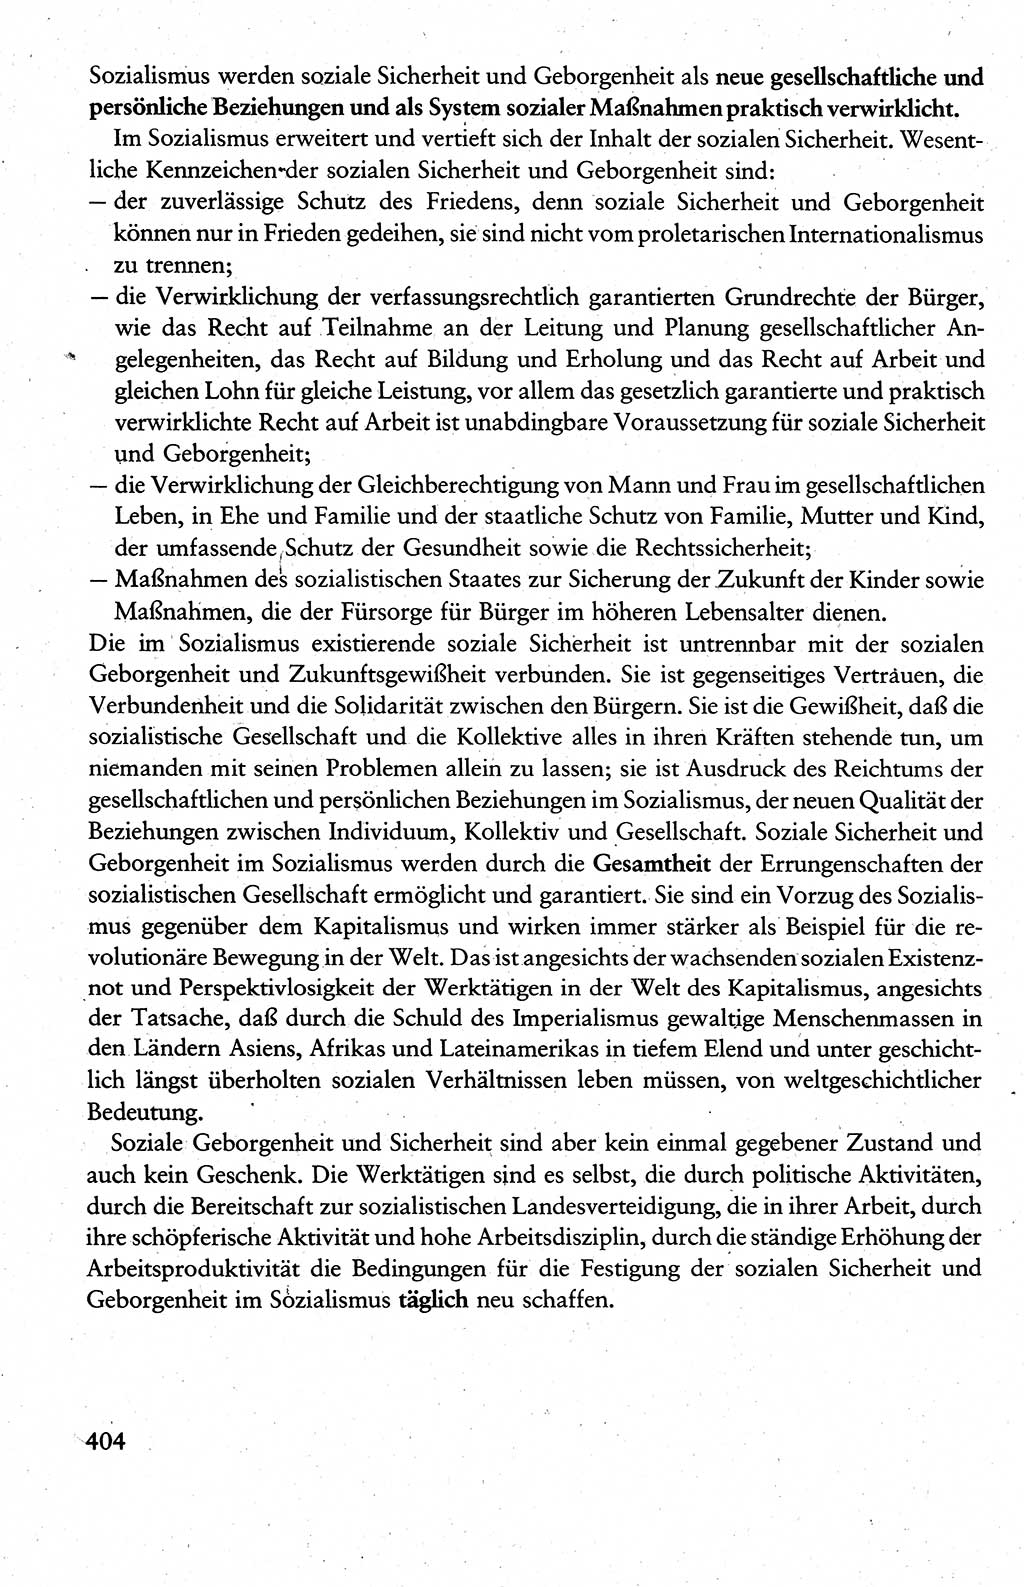 Wissenschaftlicher Kommunismus [Deutsche Demokratische Republik (DDR)], Lehrbuch für das marxistisch-leninistische Grundlagenstudium 1983, Seite 404 (Wiss. Komm. DDR Lb. 1983, S. 404)